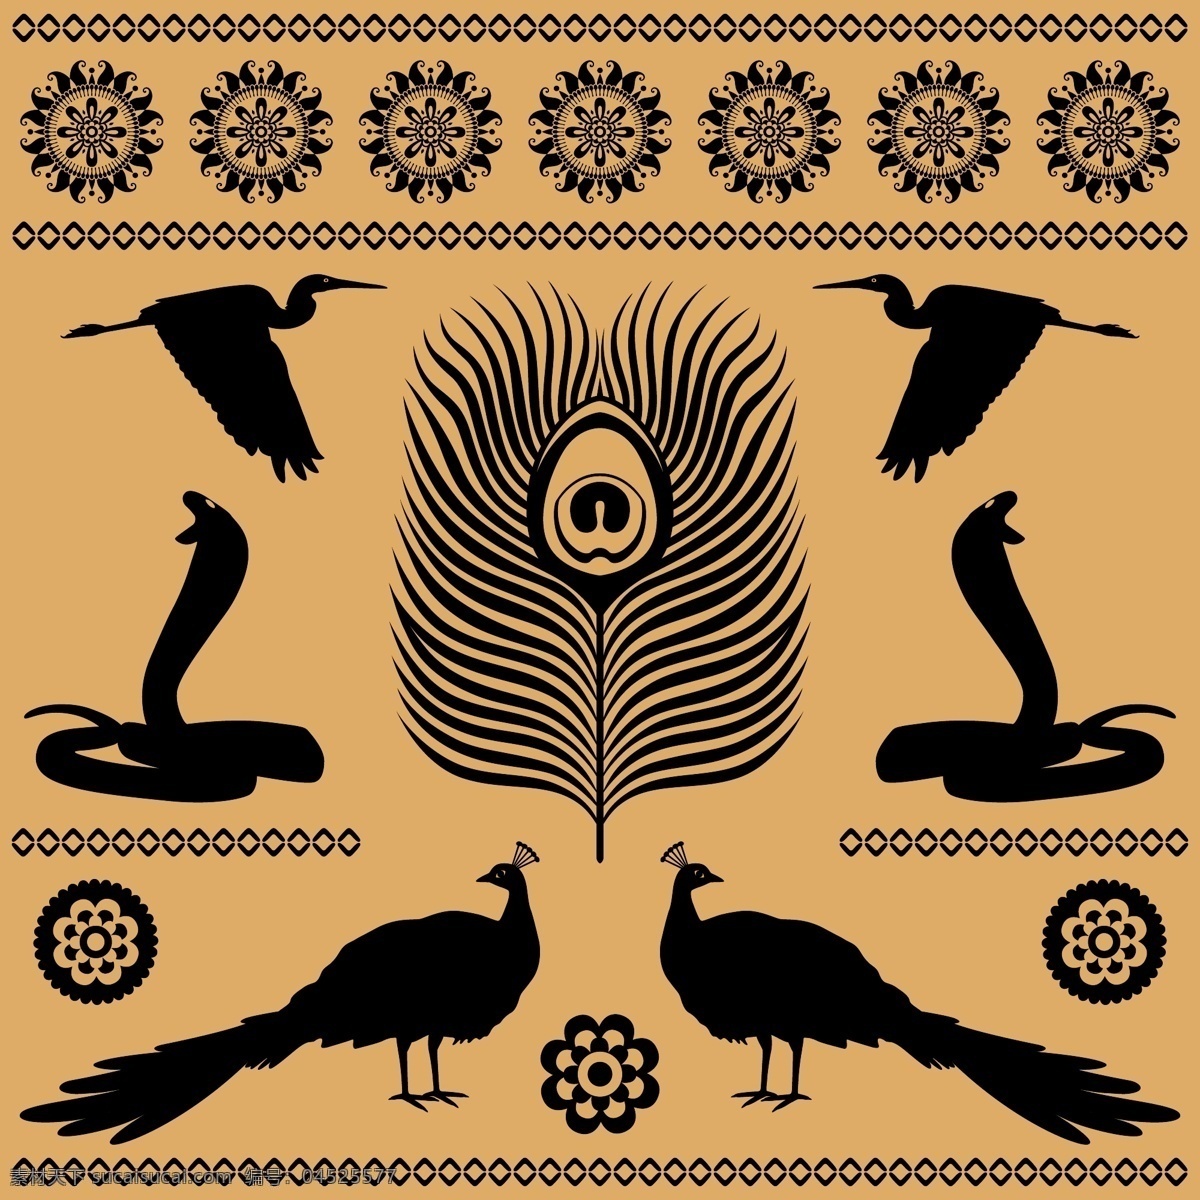 埃及 图腾 图案 矢量 例 花边 孔雀 轮廓 纹理 埃及眼镜蛇 矢量图 现代科技